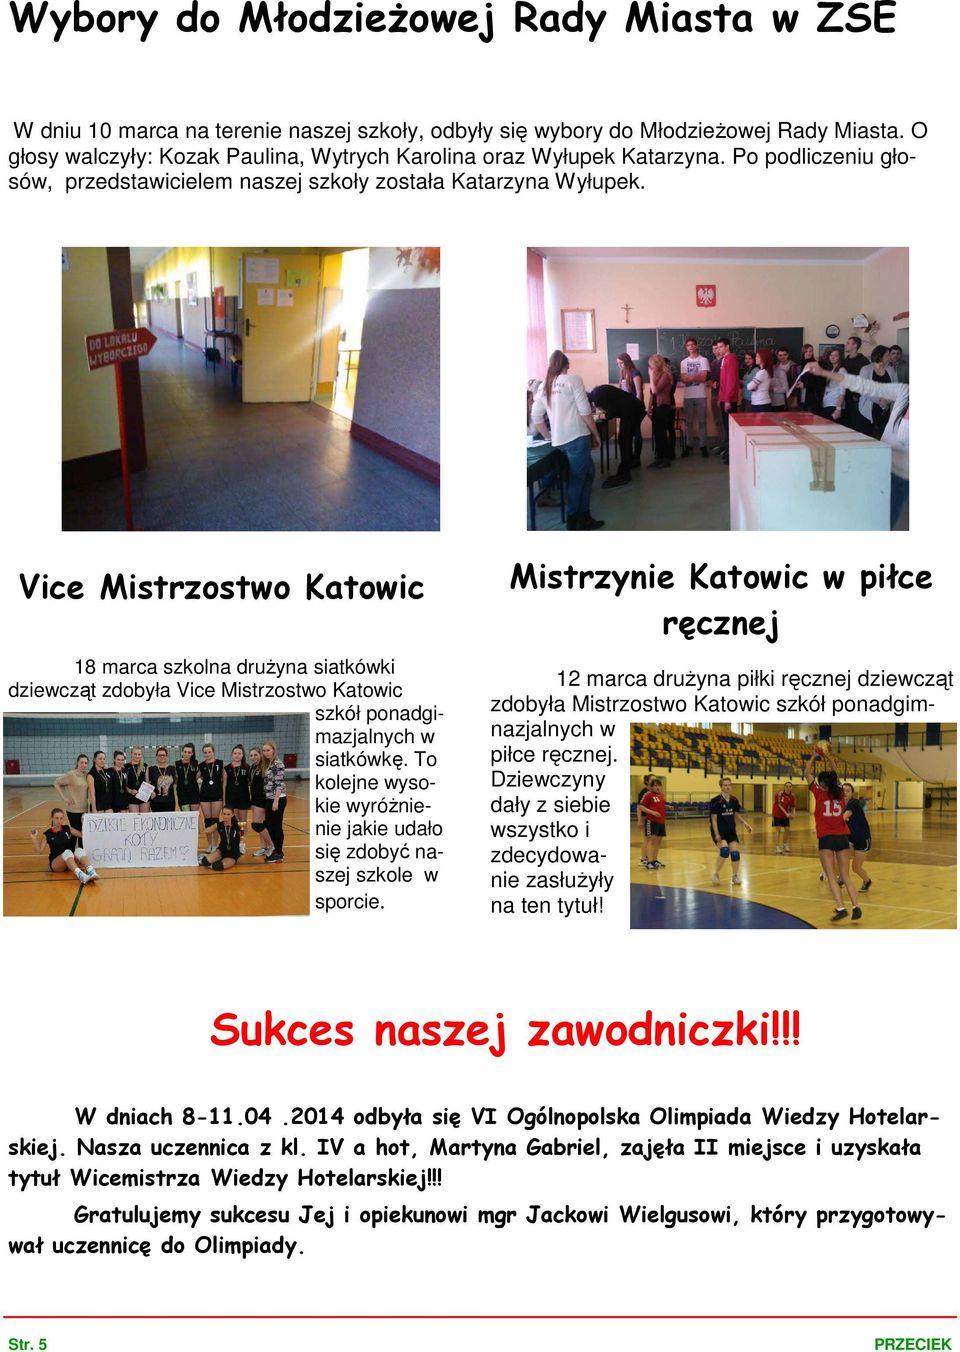 Vice Mistrzostwo Katowic 18 marca szkolna druŝyna siatkówki dziewcząt zdobyła Vice Mistrzostwo Katowic szkół ponadgimazjalnych w siatkówkę.